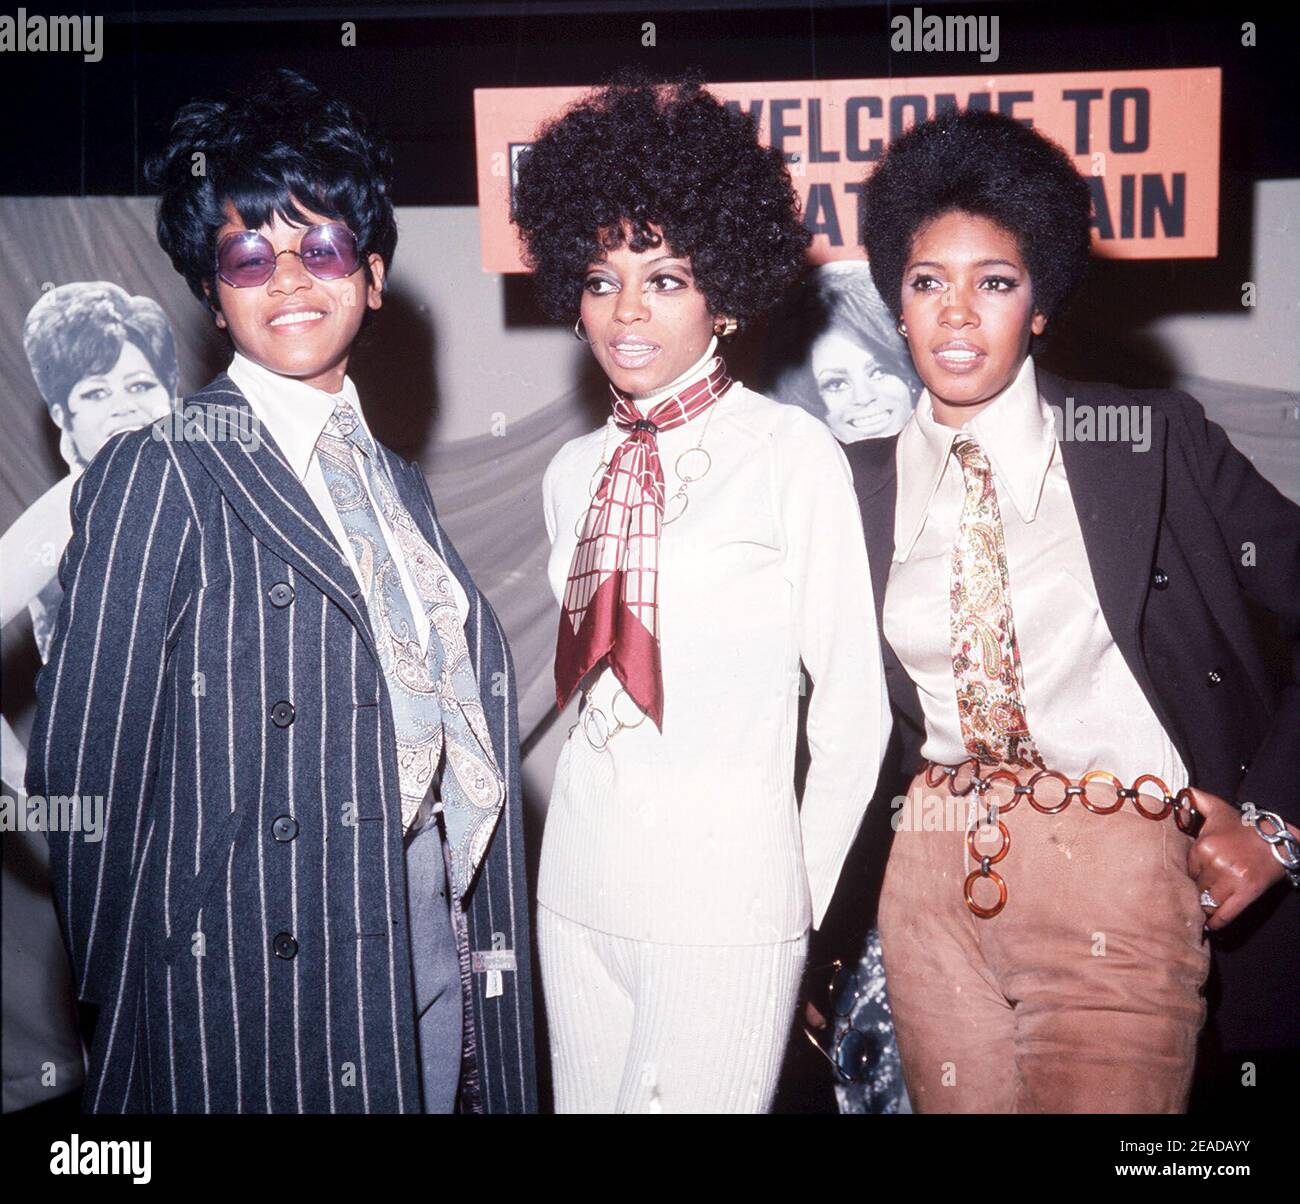 File photo datato 19/11/68 dei cantanti pop americani Diana Ross (al centro) e i Supremes, Cindy Birdsong (a sinistra) e Mary Wilson alla EMI Records di Londra. Mary Wilson, la suprema originale da più tempo regnante, è morta a Las Vegas all'età di 76 anni. Data di emissione: Martedì 9 febbraio 2021. Foto Stock